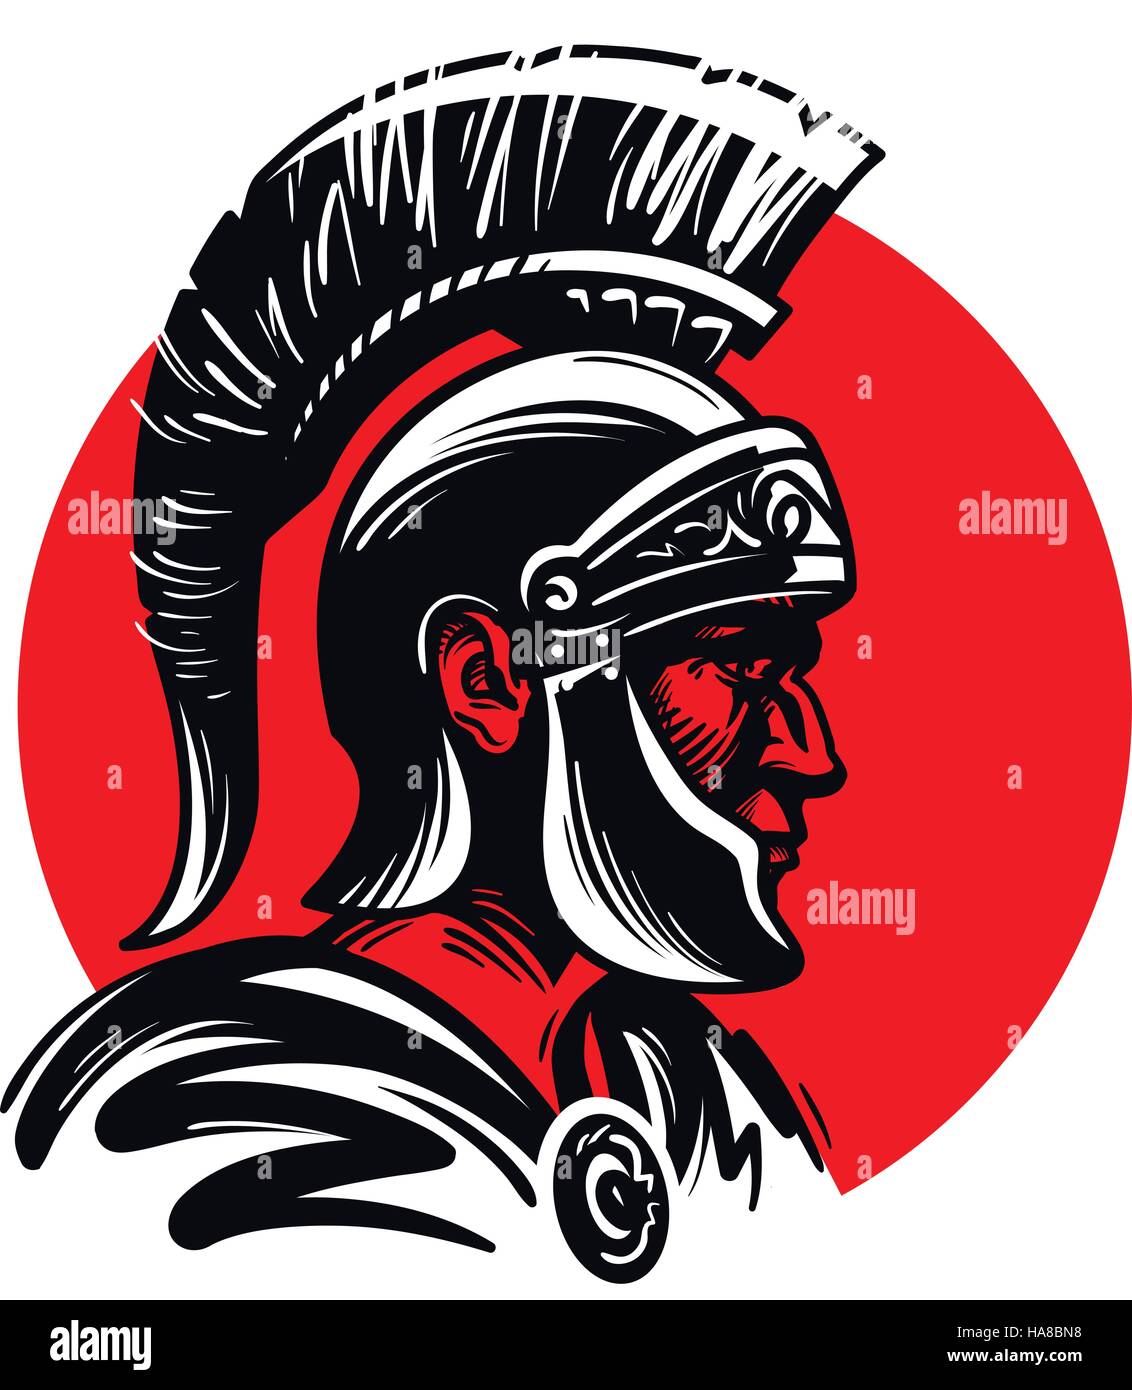 Römischer Soldat oder Gladiator im inneren Kreis. Vektor-illustration Stock Vektor